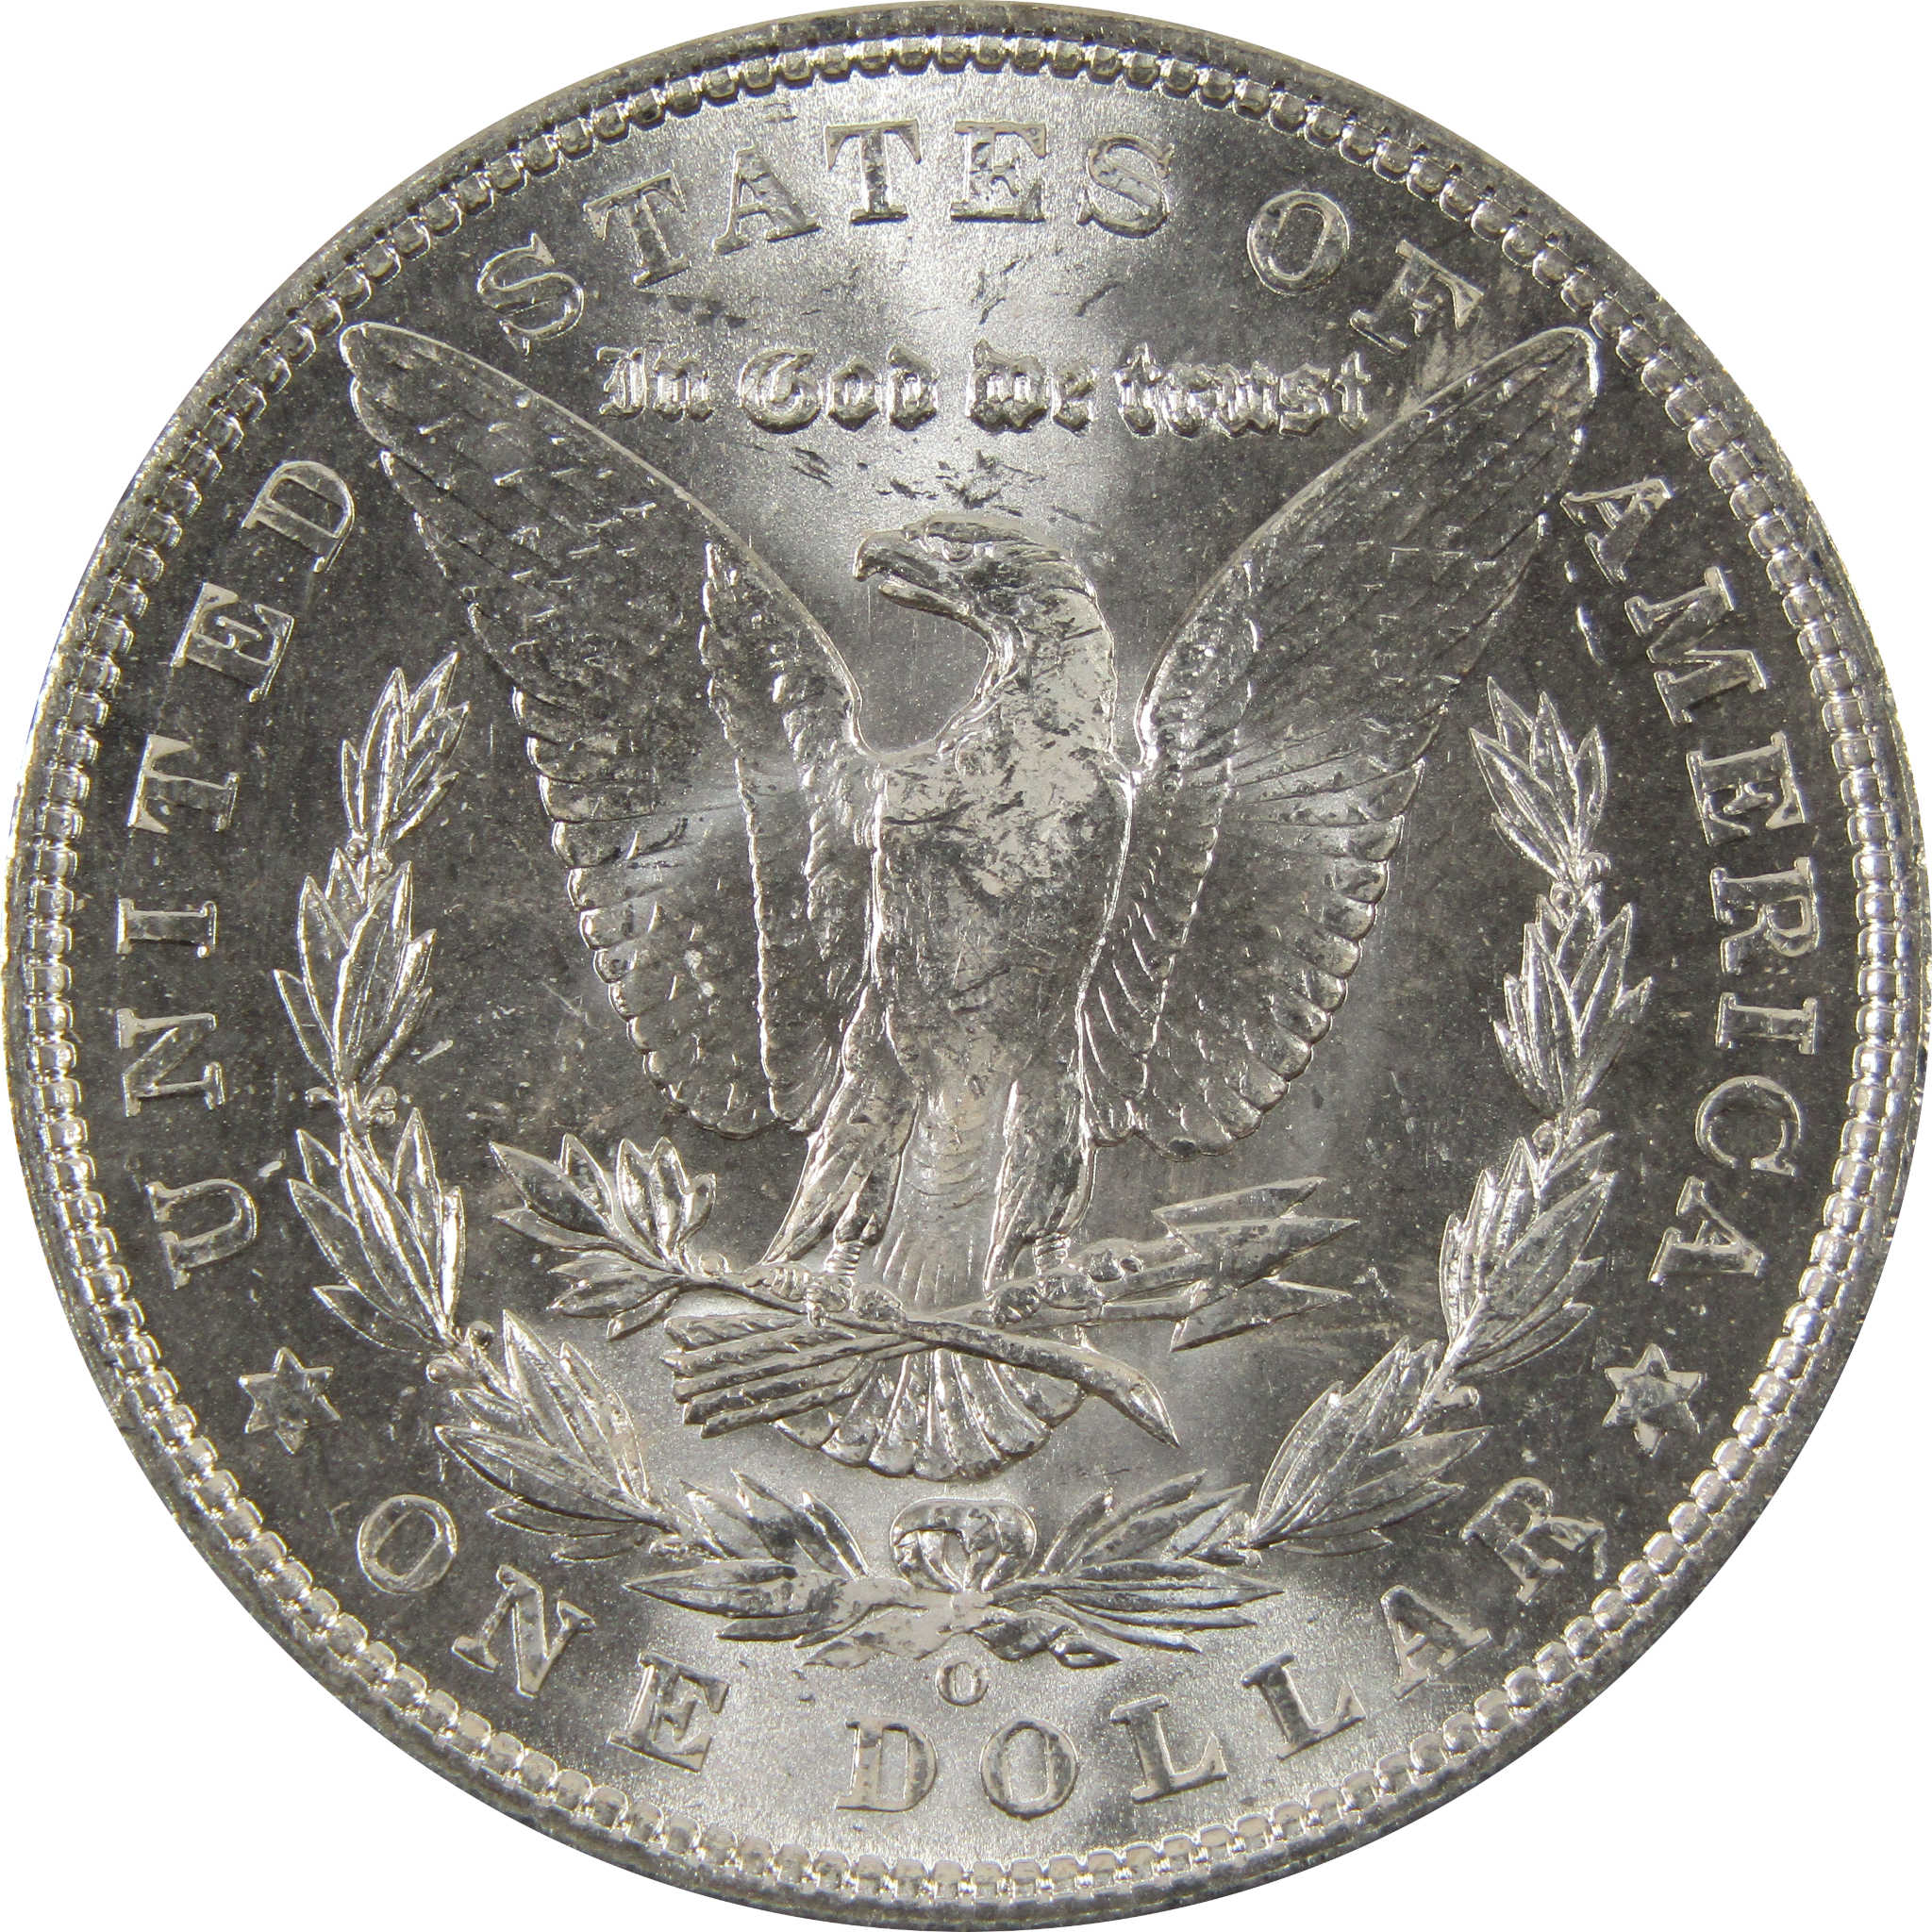 1903 O Morgan Dollar BU Choice Uncirculated 90% Silver $1 SKU:I7512 - Morgan coin - Morgan silver dollar - Morgan silver dollar for sale - Profile Coins &amp; Collectibles